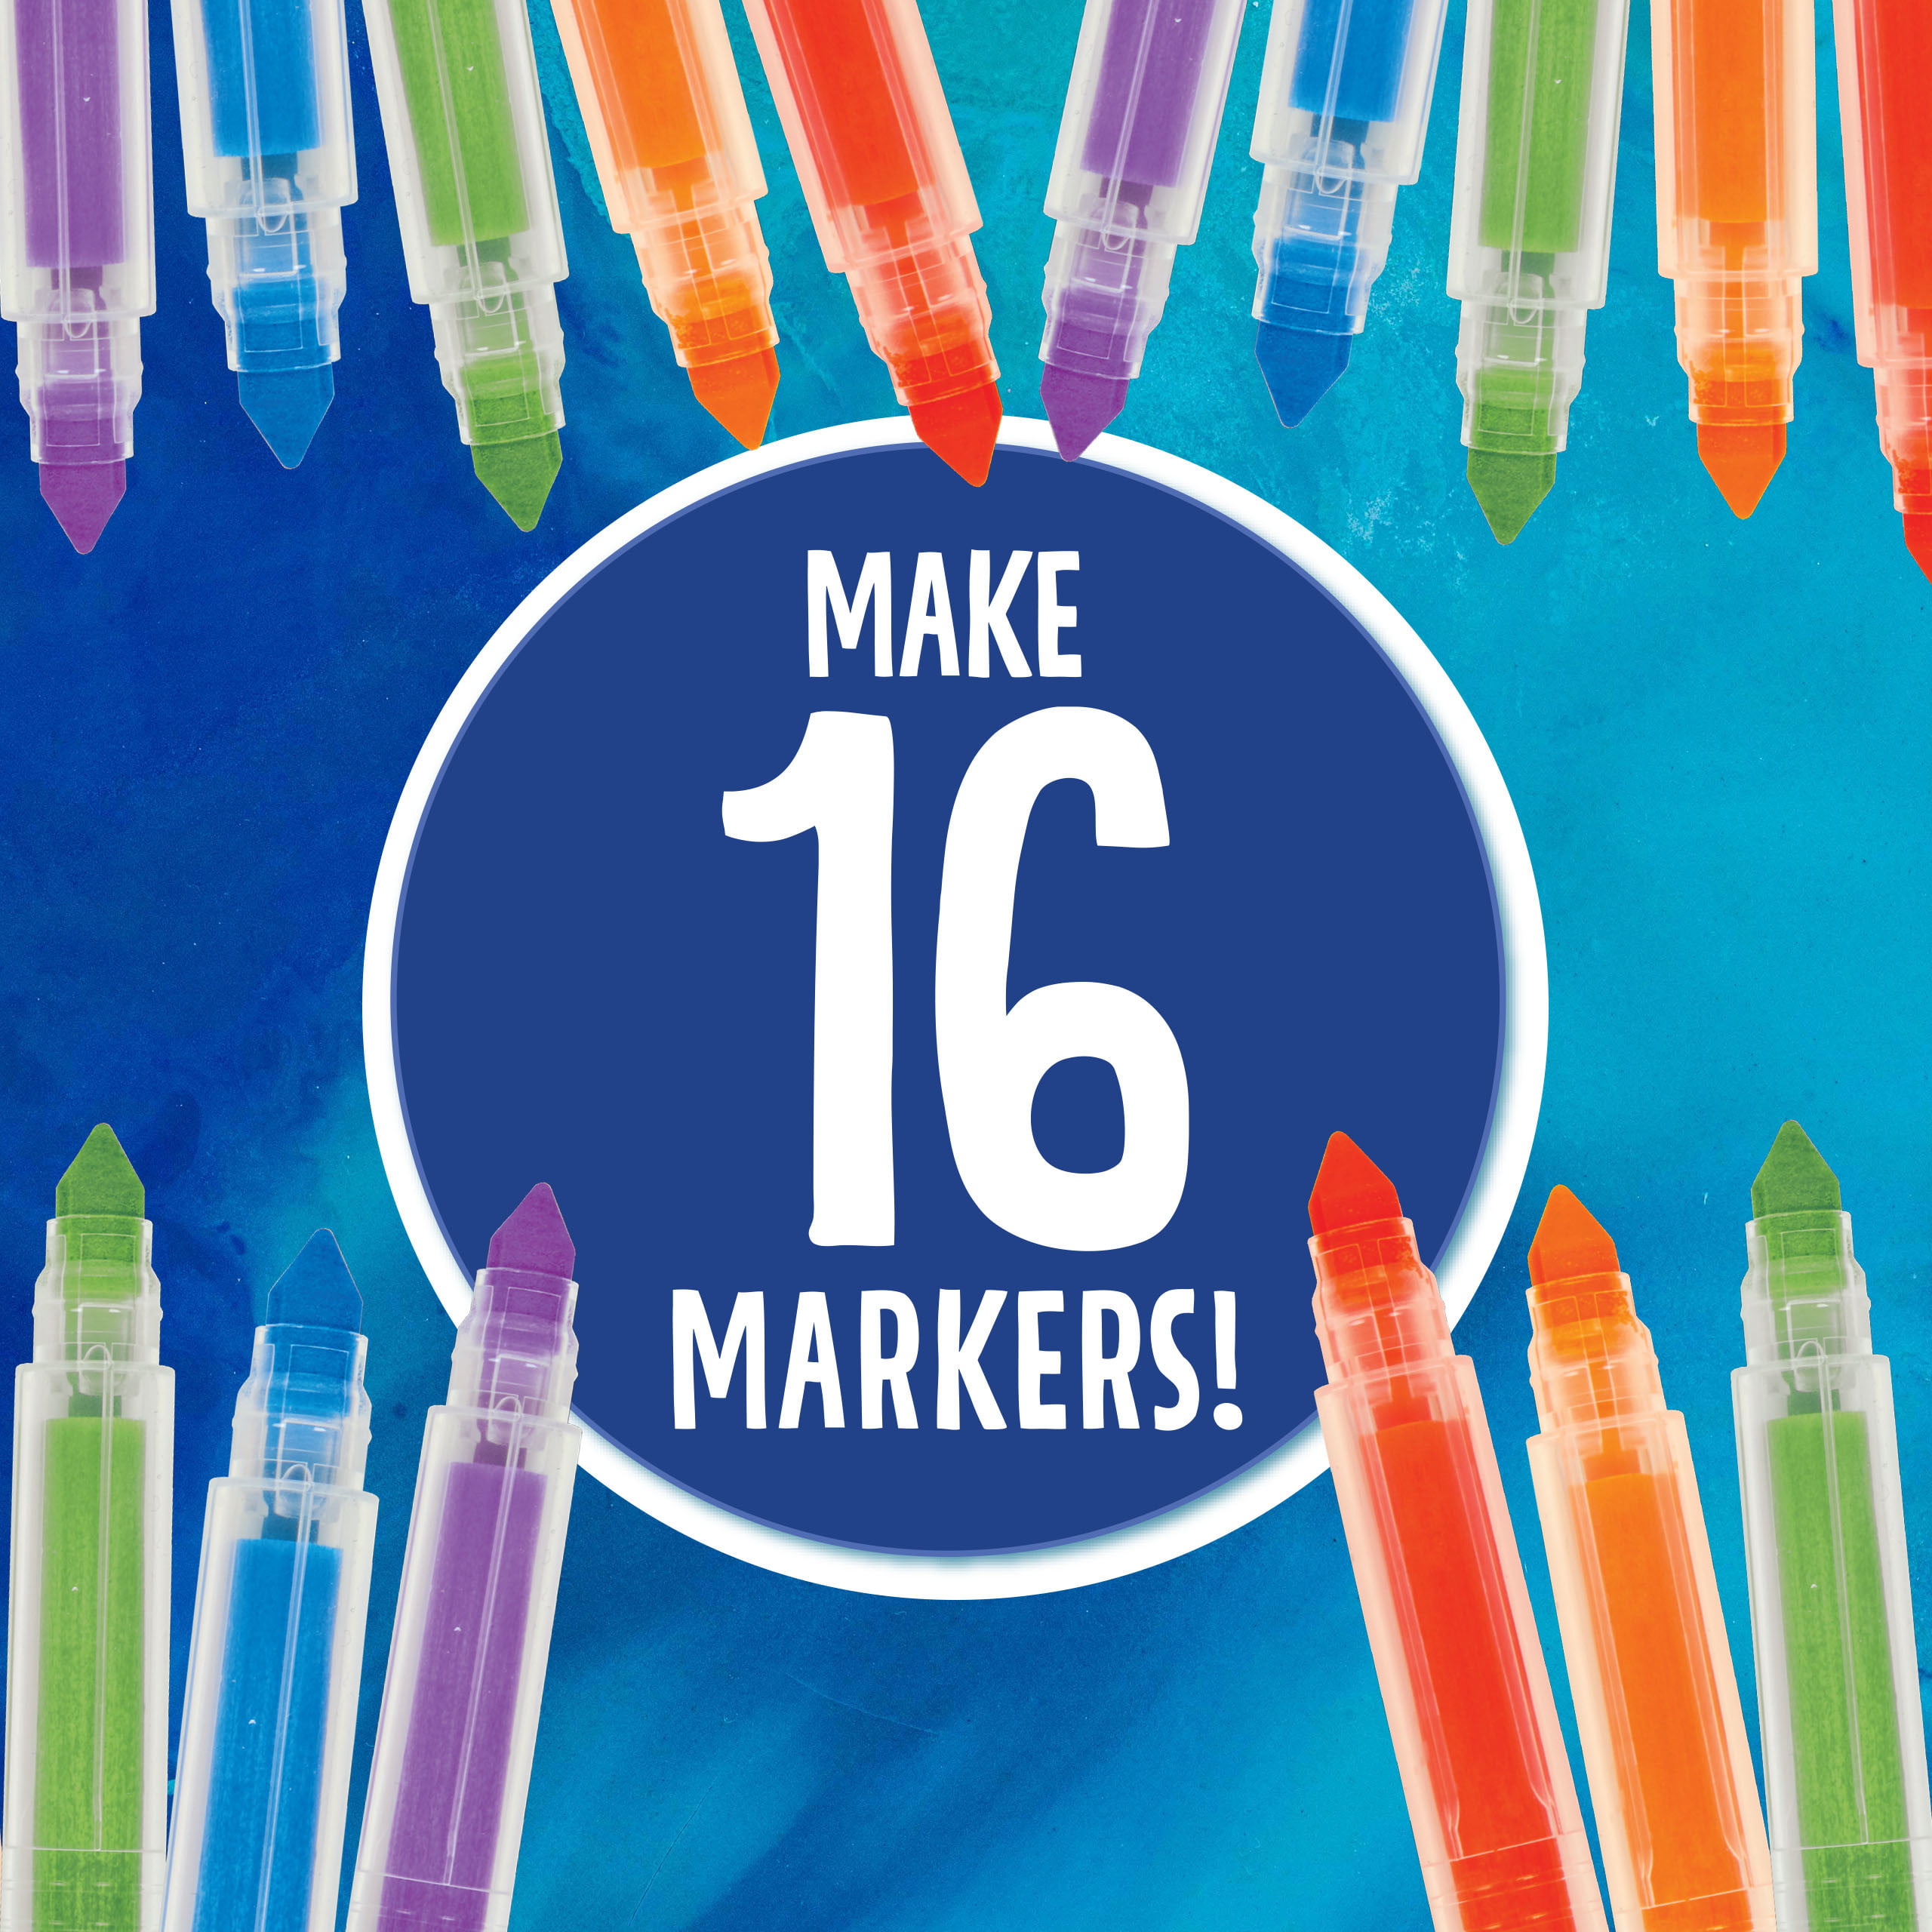 Crayola Marker Maker Starter Kit – yogendra-shop